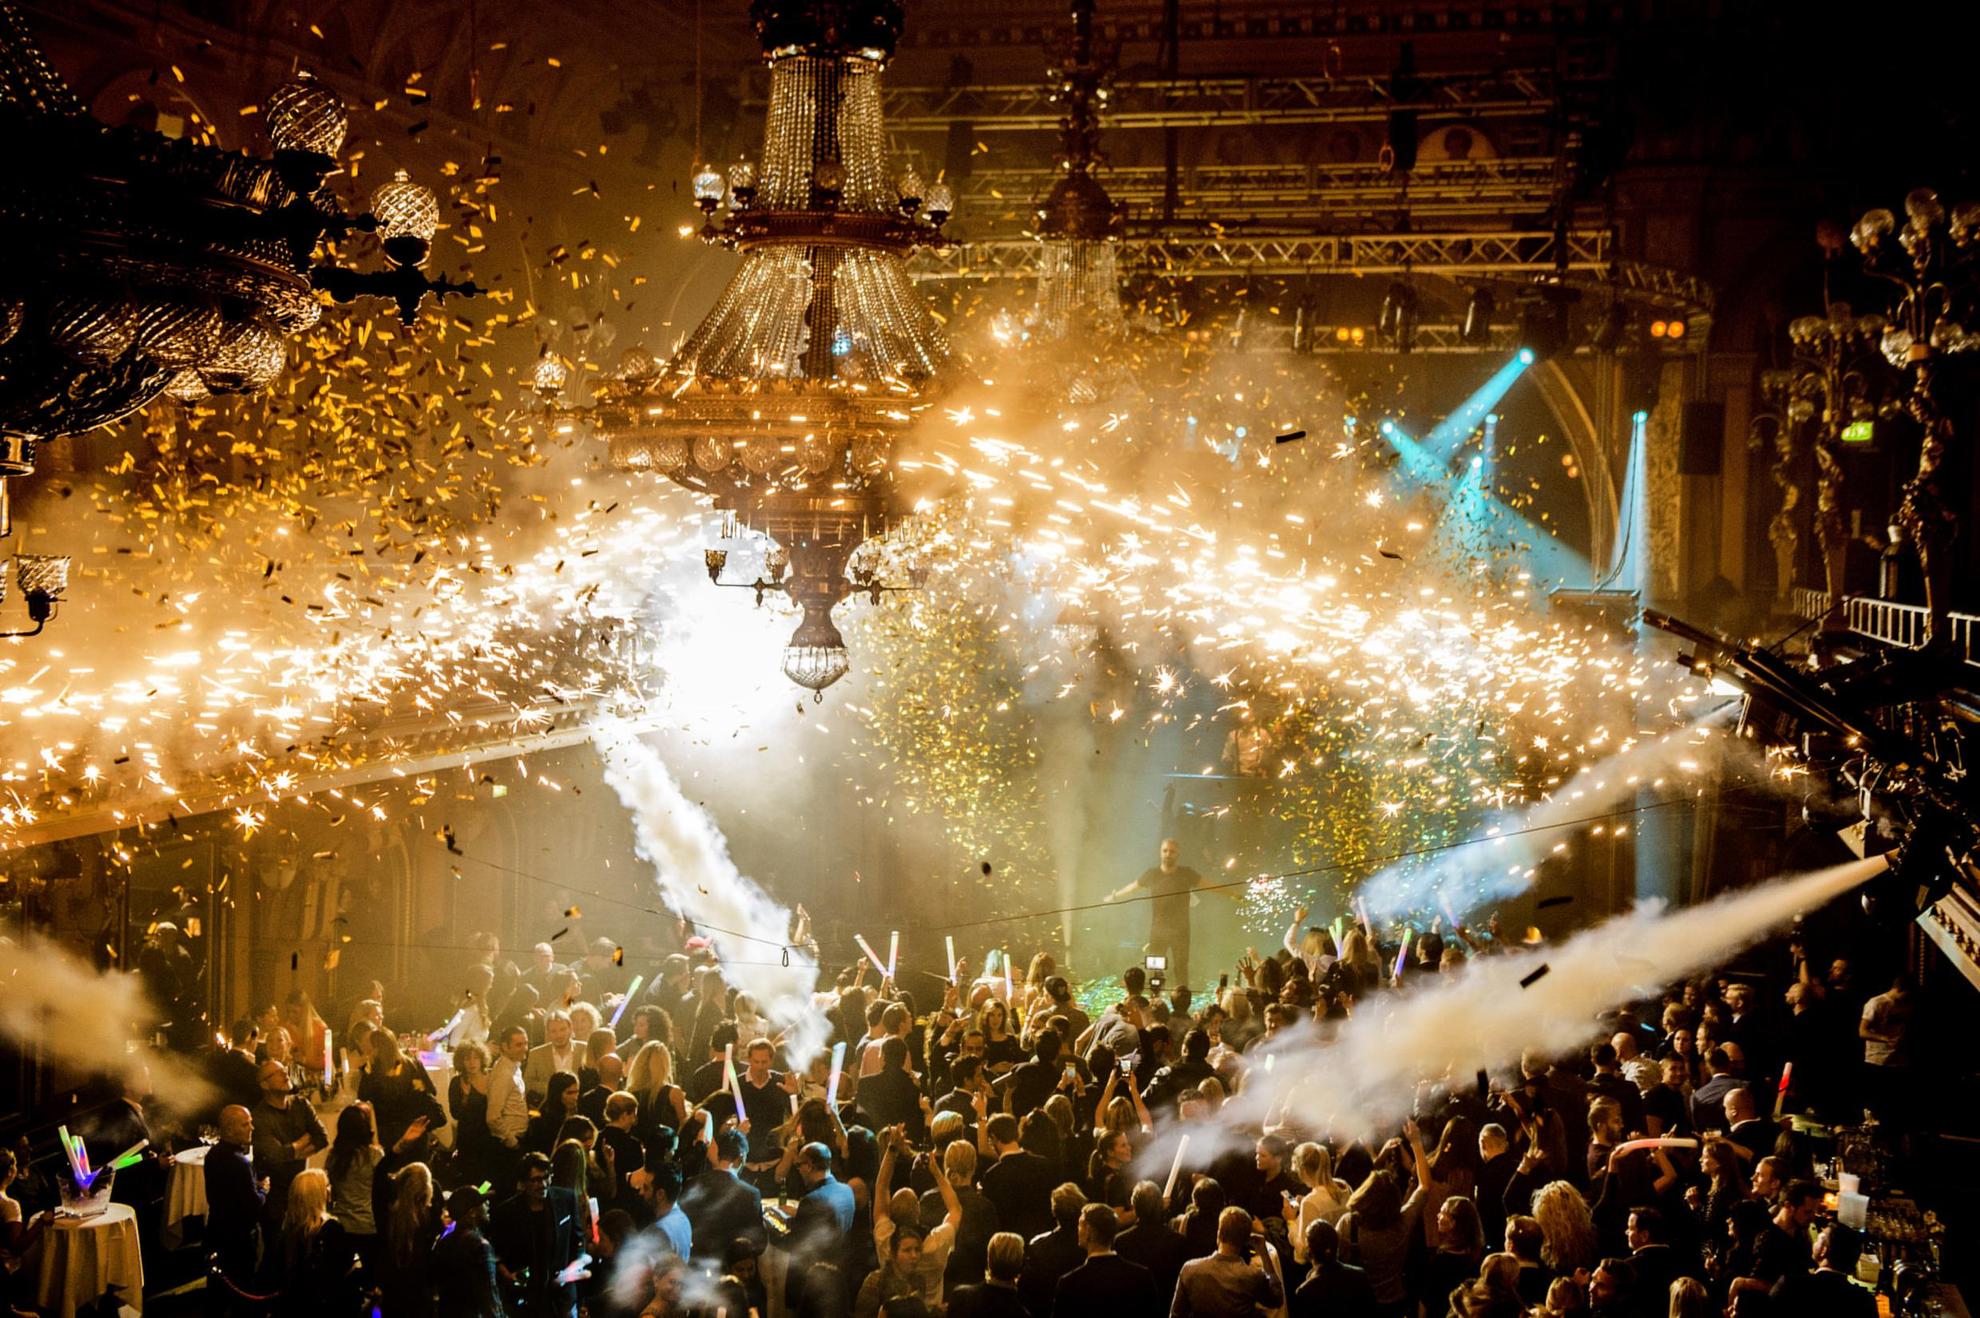 La boîte de nuit de Berns remplie de personnes en train de danser. Des canons soufflent de la fumée et des confettis au-dessus de la foule.